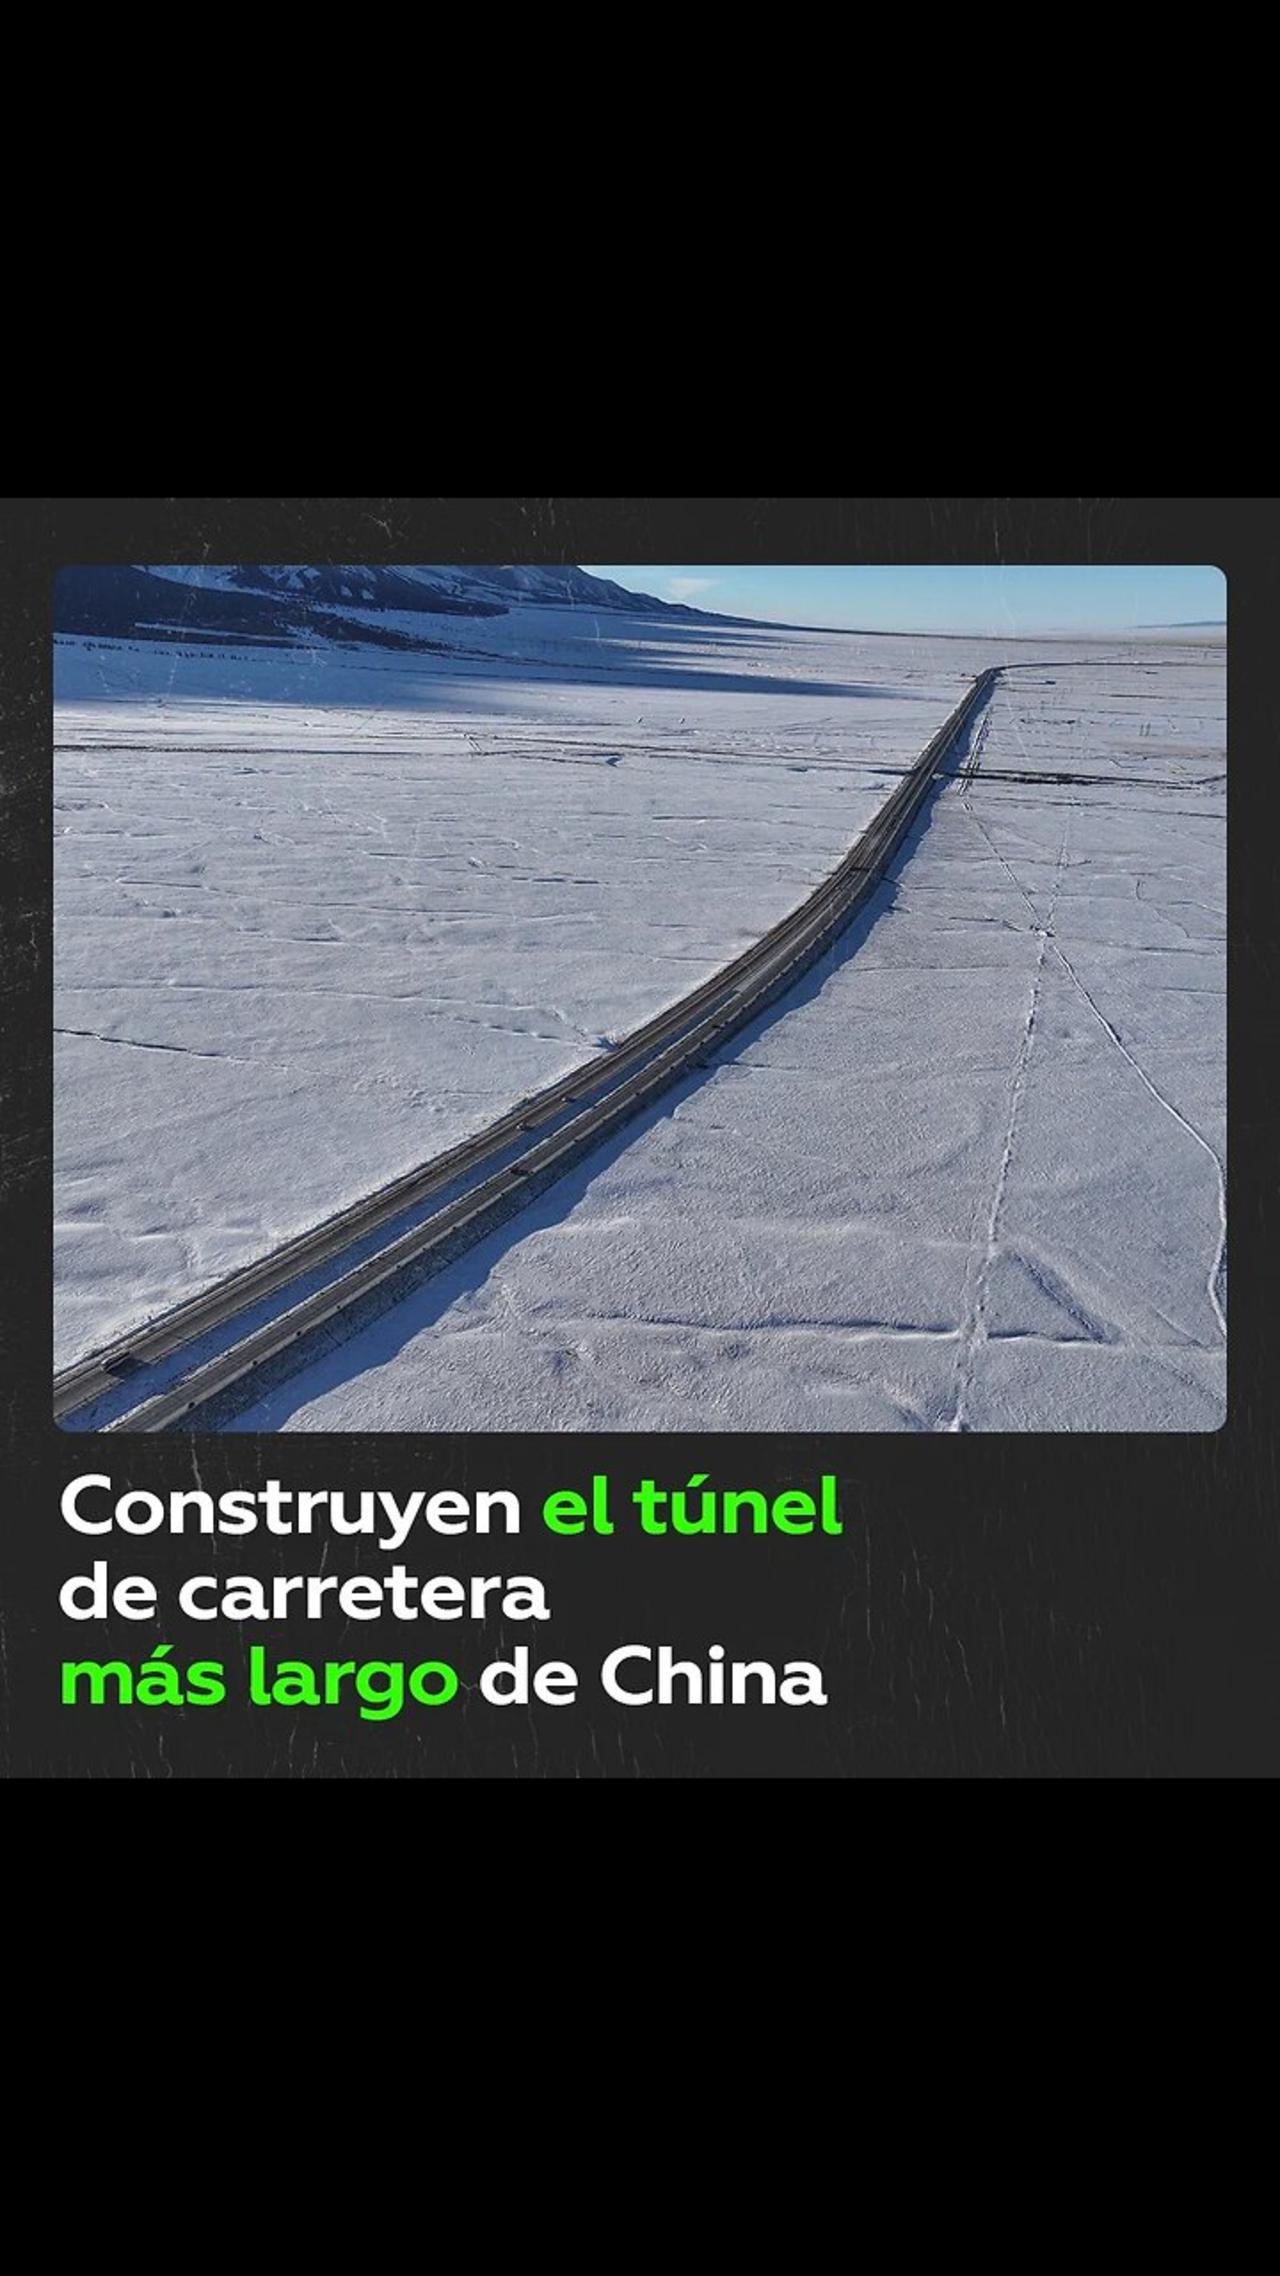 La construcción del túnel de carretera más largo de China está por terminar